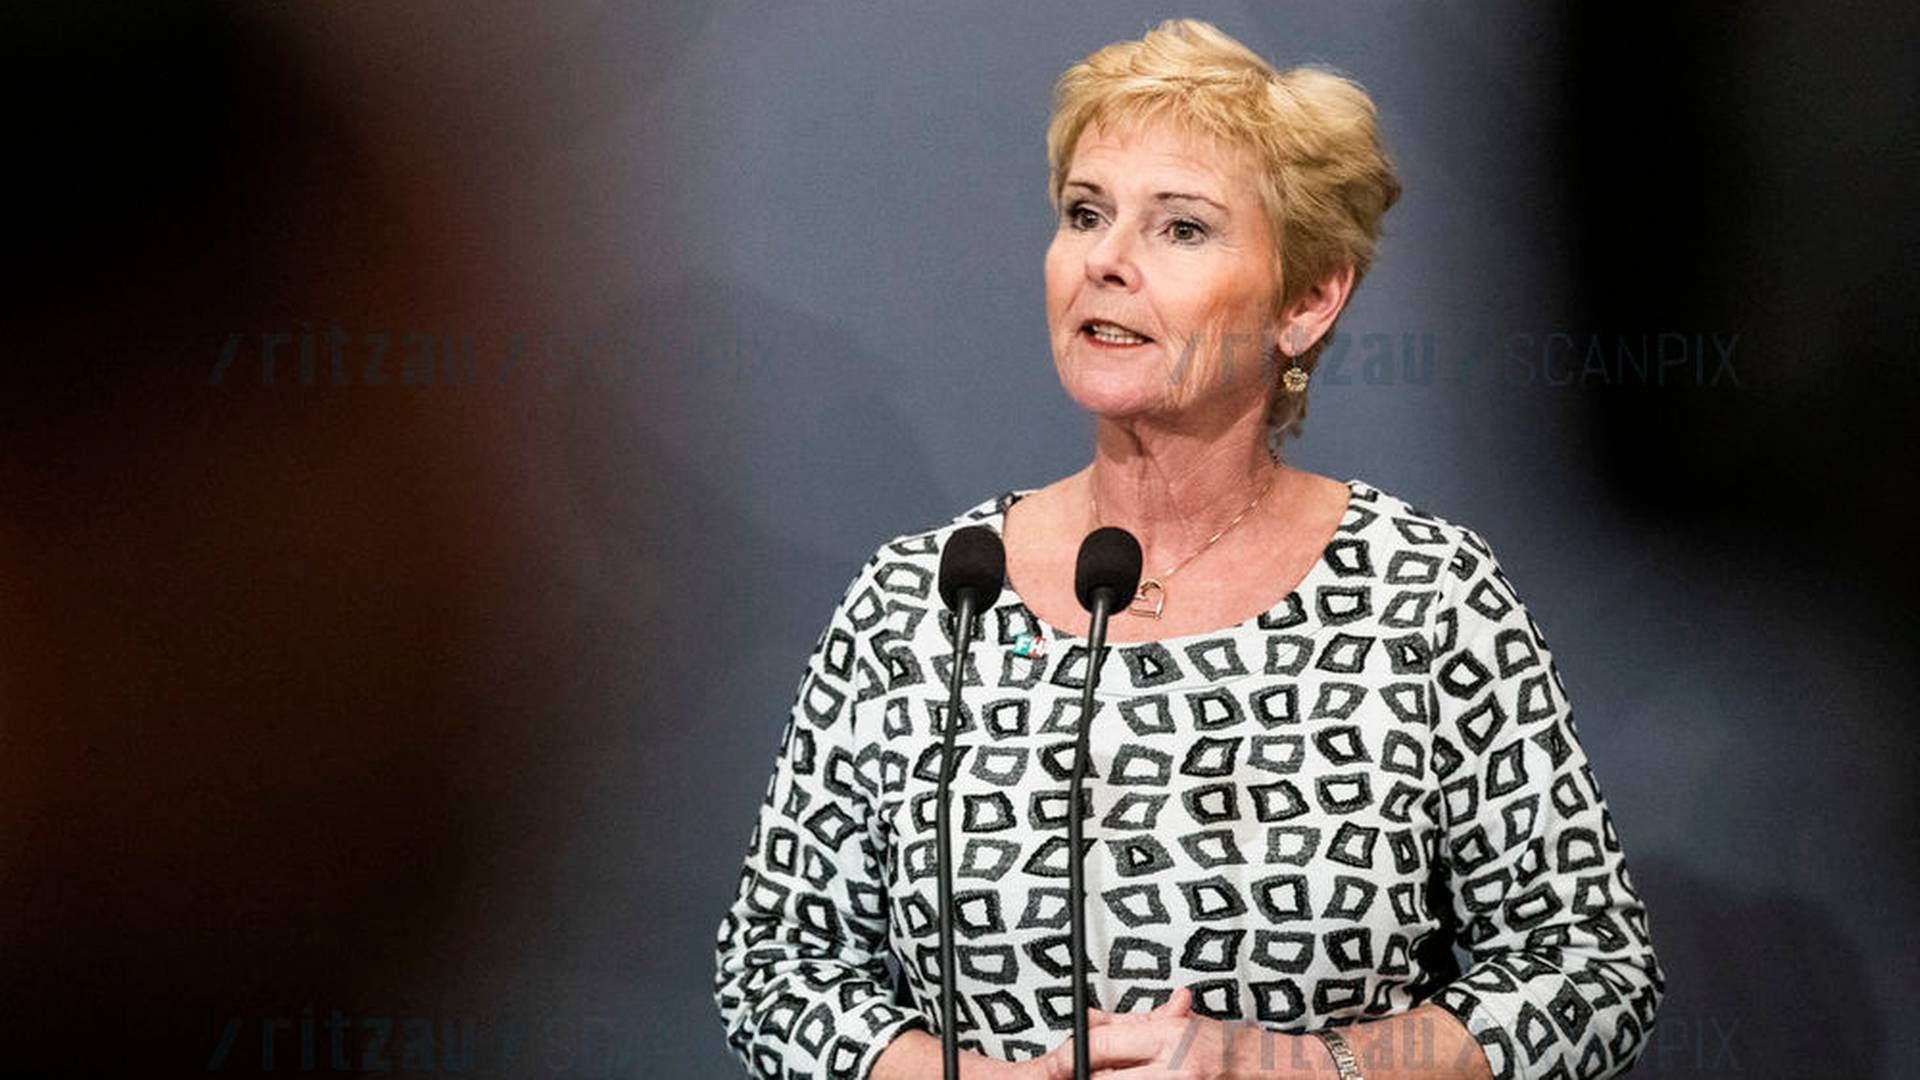 Lizette Risgaard, formand for FH, vil give virksomhederne skatterabat, så Danmark får gang i hjulene igen. | Foto: Olafur Steinar Gestsson/Ritzau Scanpix